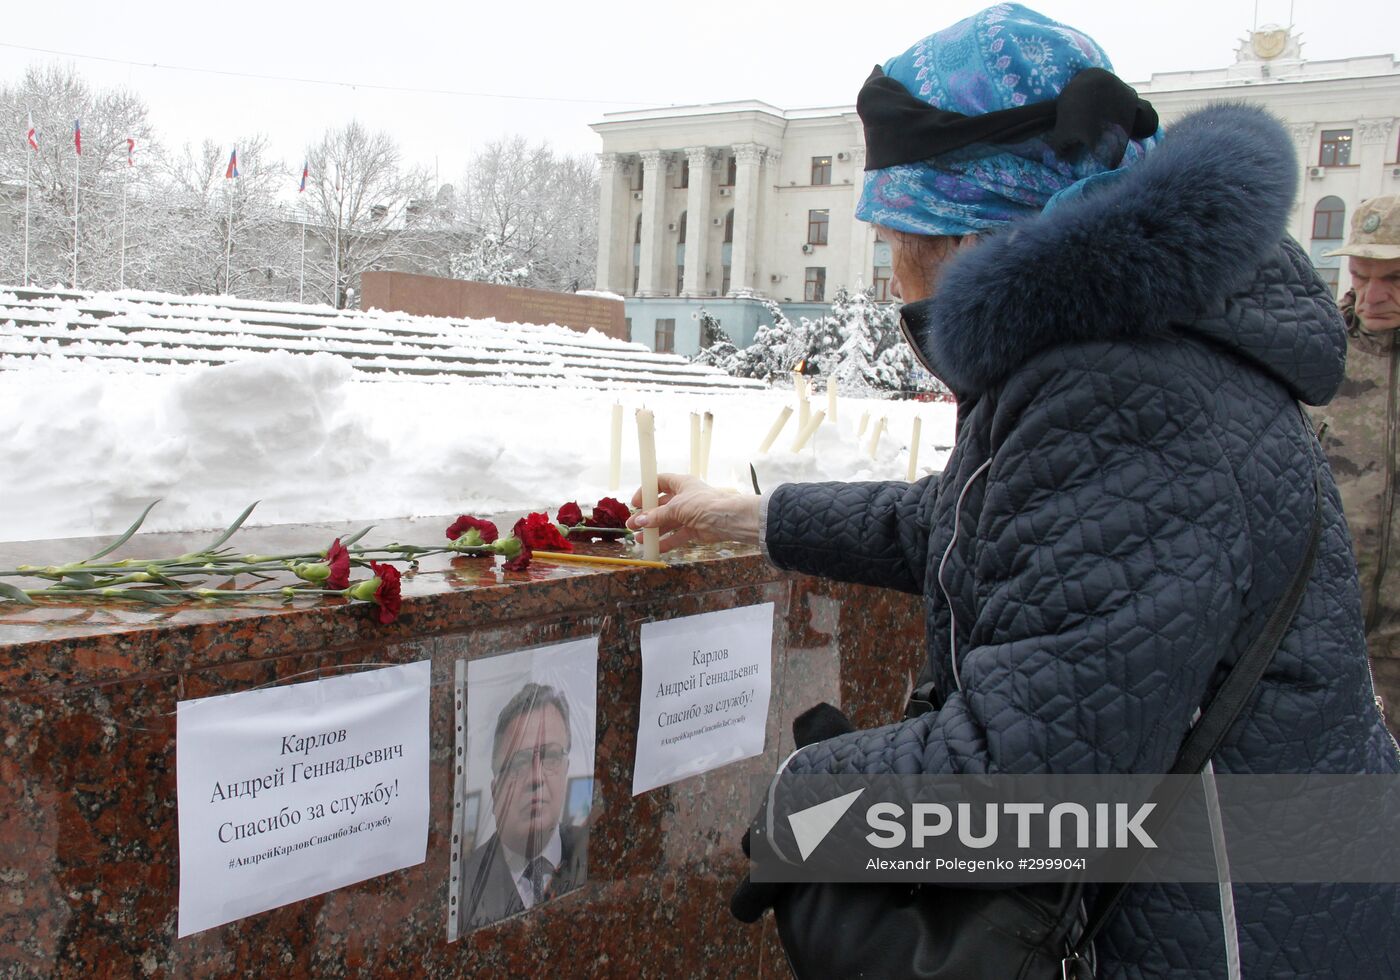 Commemorative event devoted to Russia's Ambassador to Turkey Andrei Karlov in Simferopol